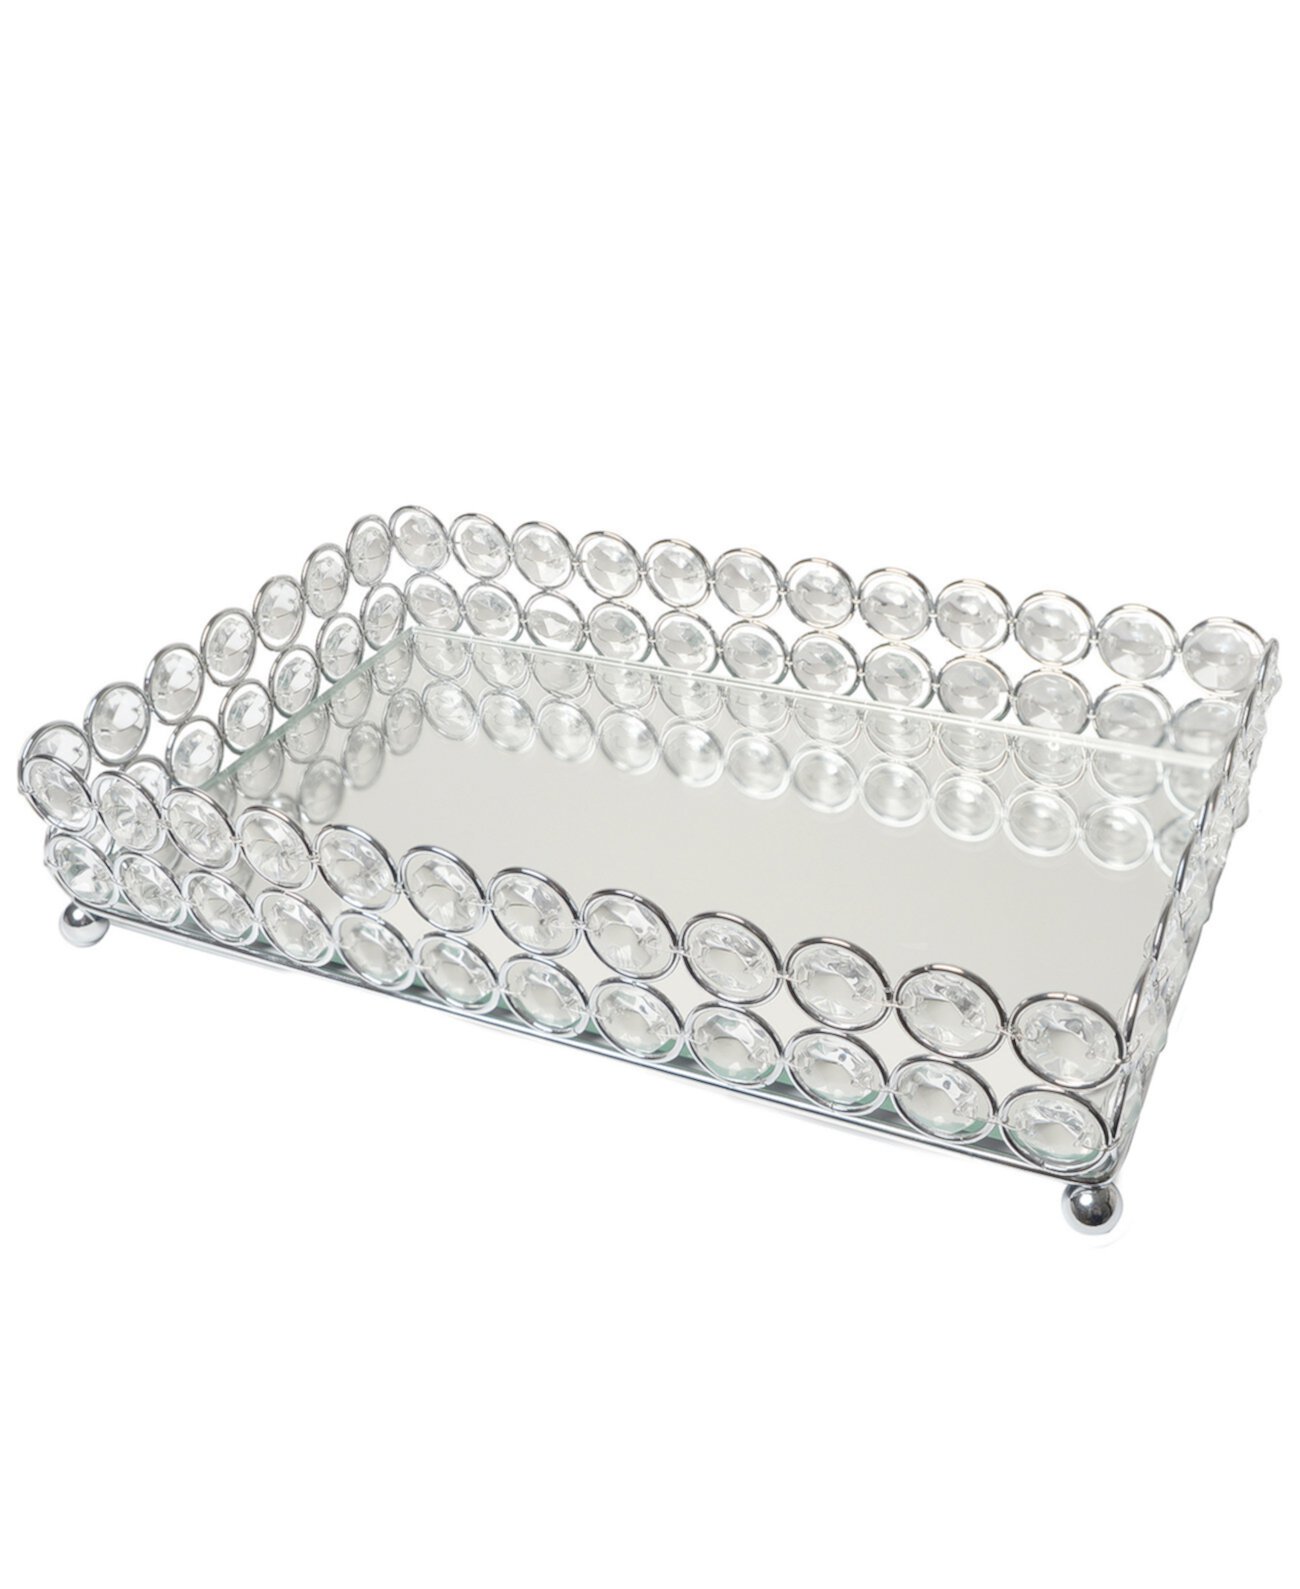 Elipse Crystal Декоративный зеркальный поднос-органайзер для ювелирных изделий или косметики Elegant Designs